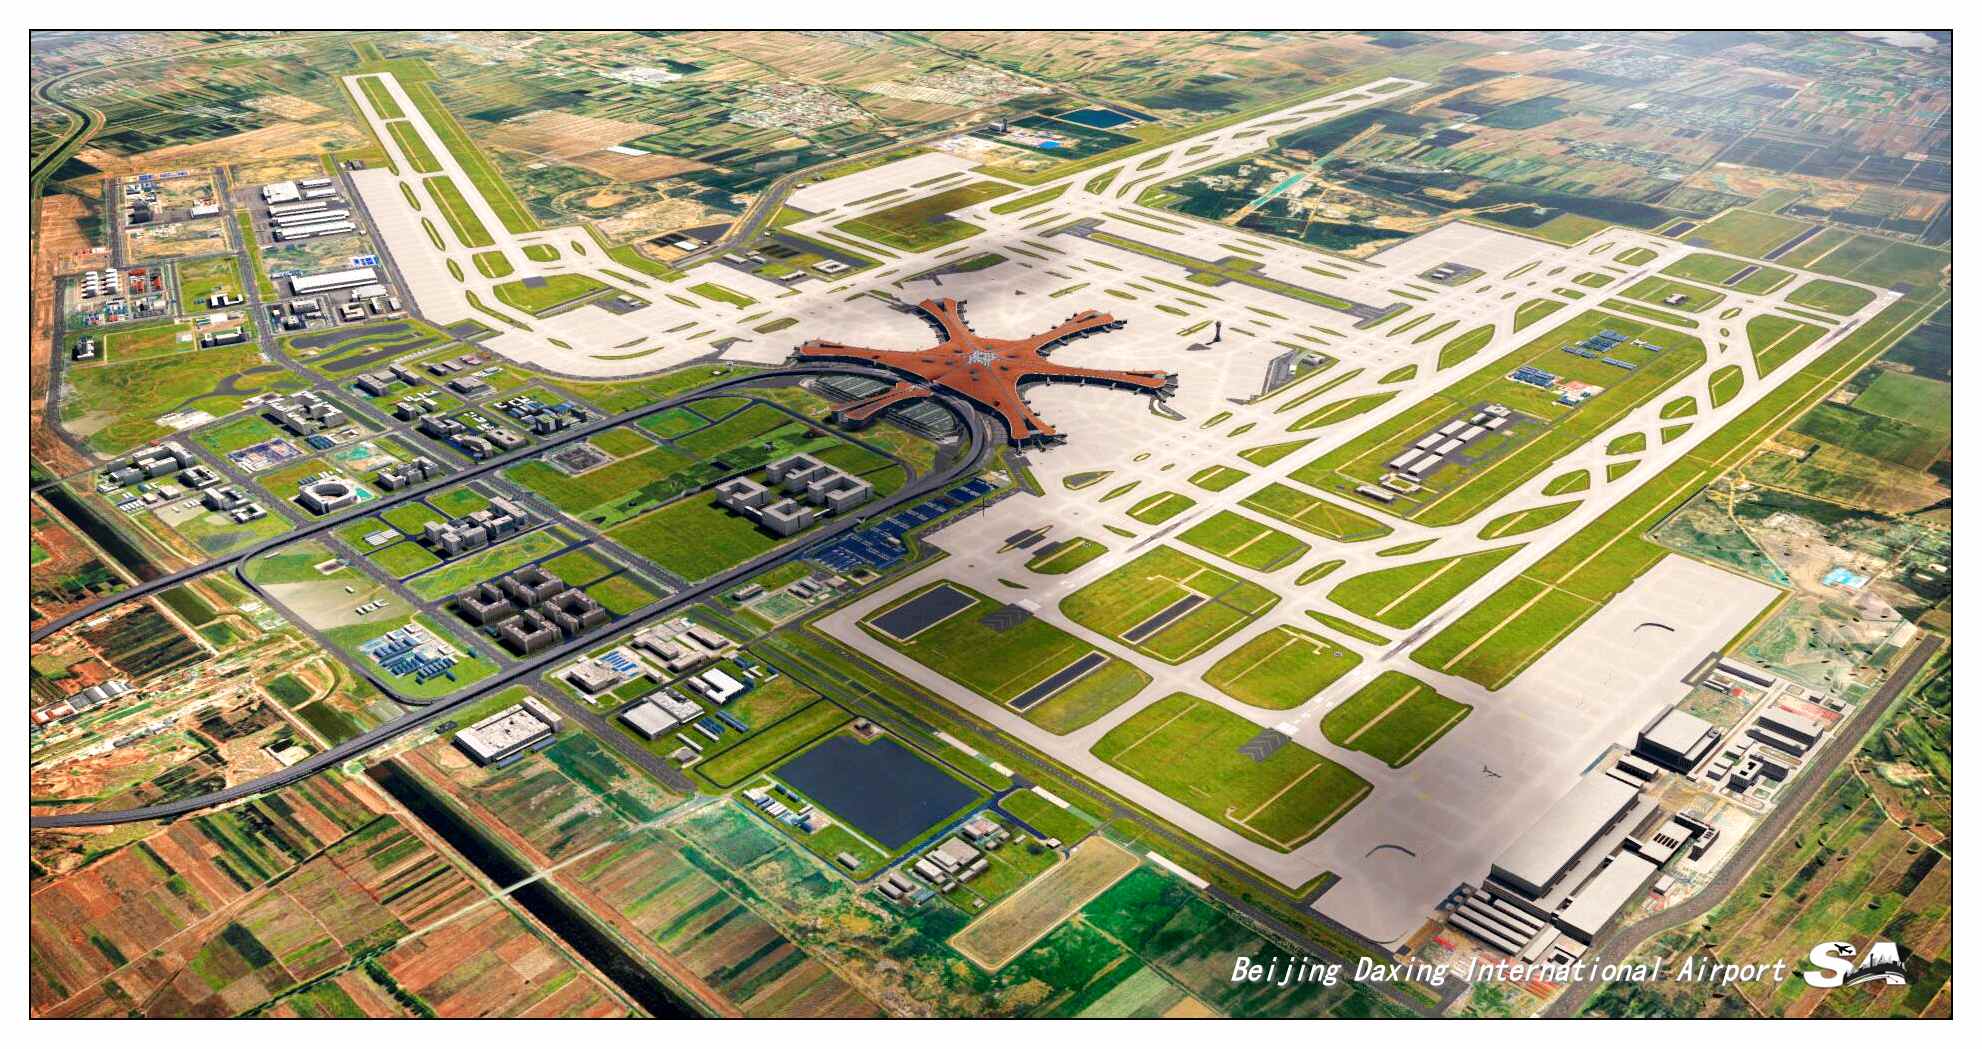 【X-Plane】ZBAD北京大兴国际机场-正式发布-5722 